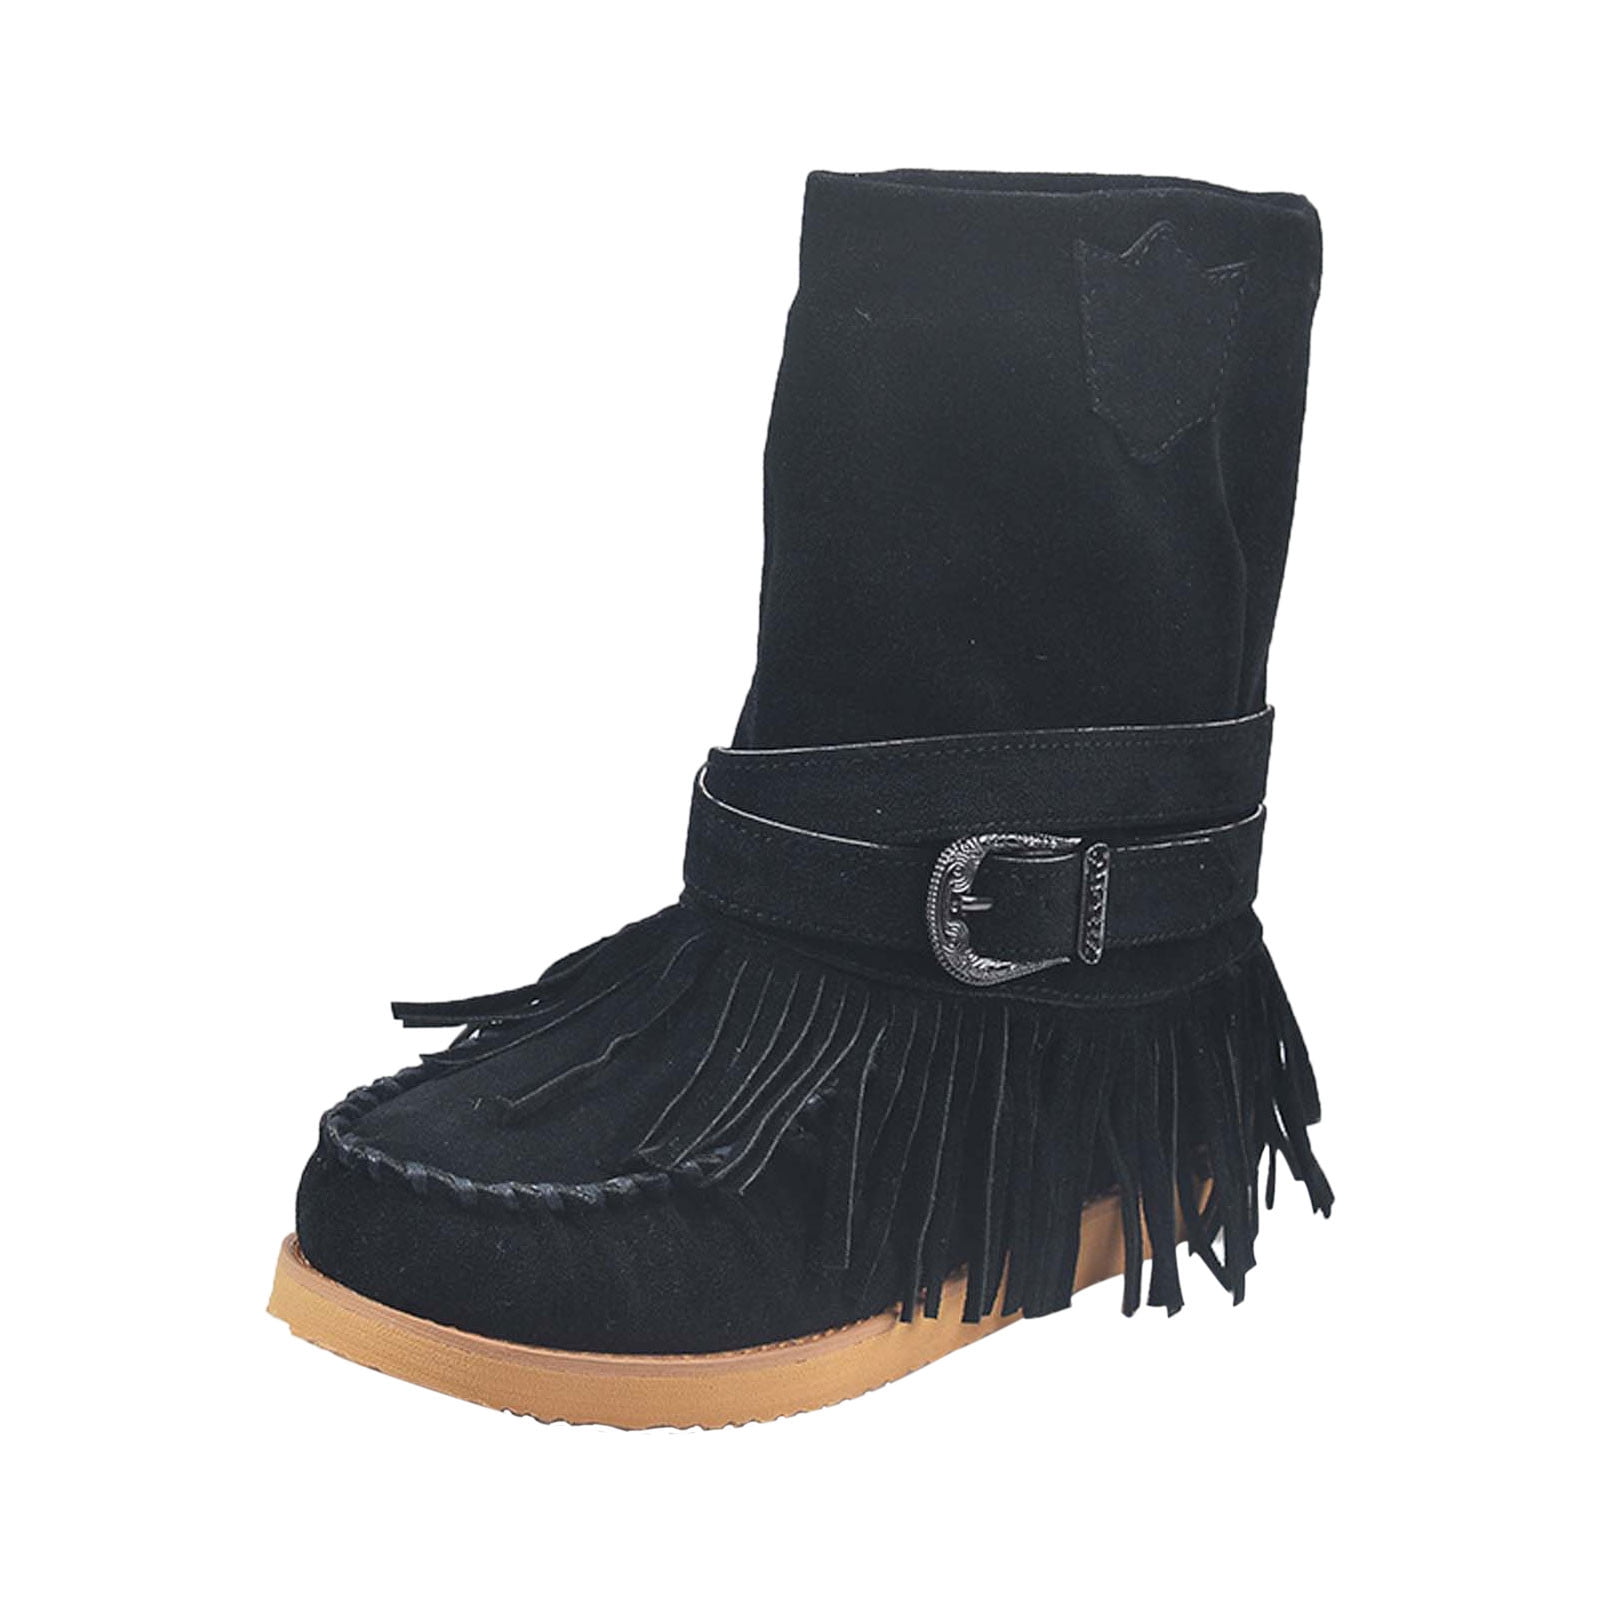 Women's Suede Moccasin Boots Round Toe Tassel Flats Heel Buckle Casual Booties